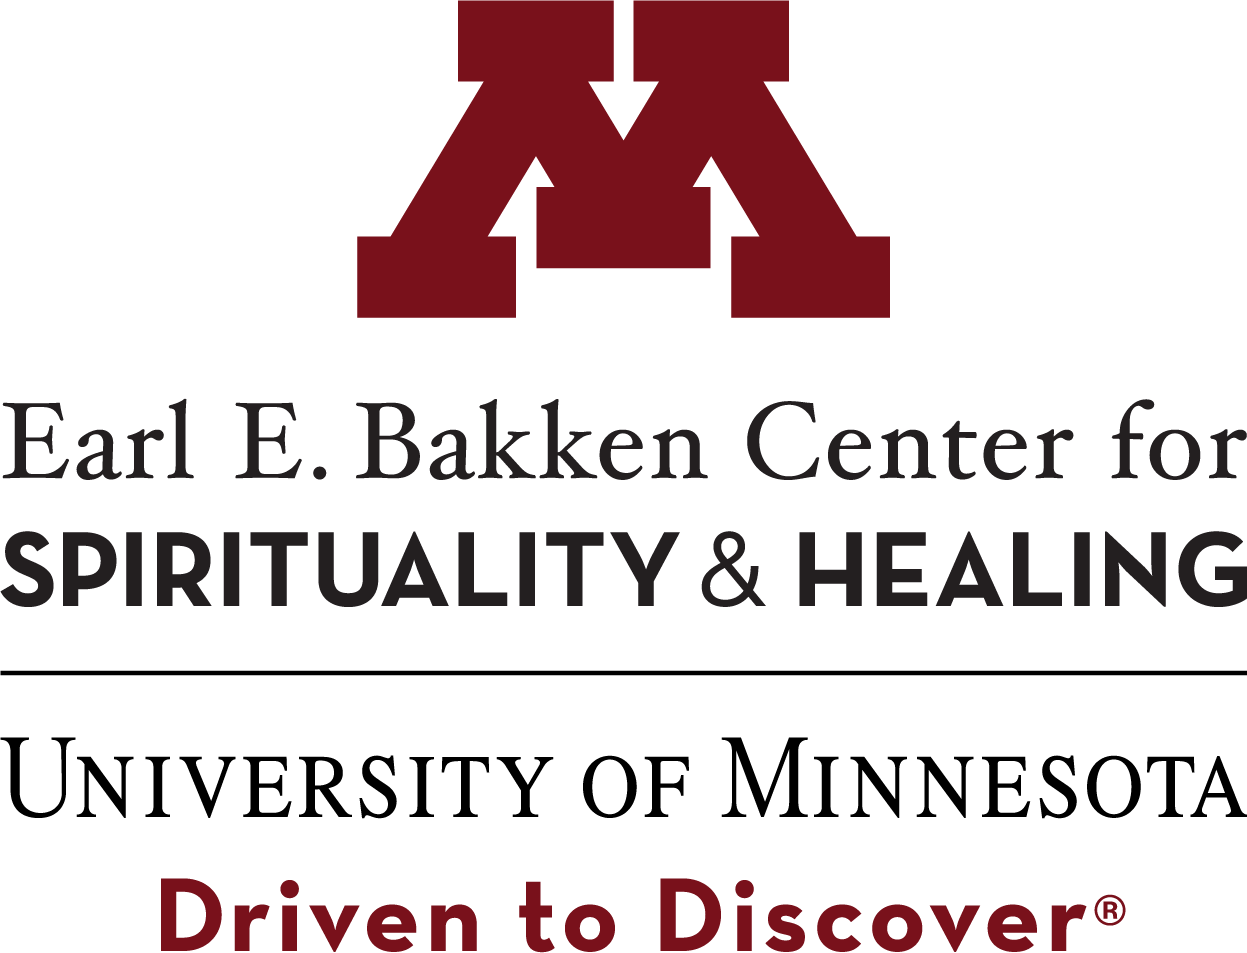 Earl E Bakken Center for Spirituality & Healing, University of Minnesota